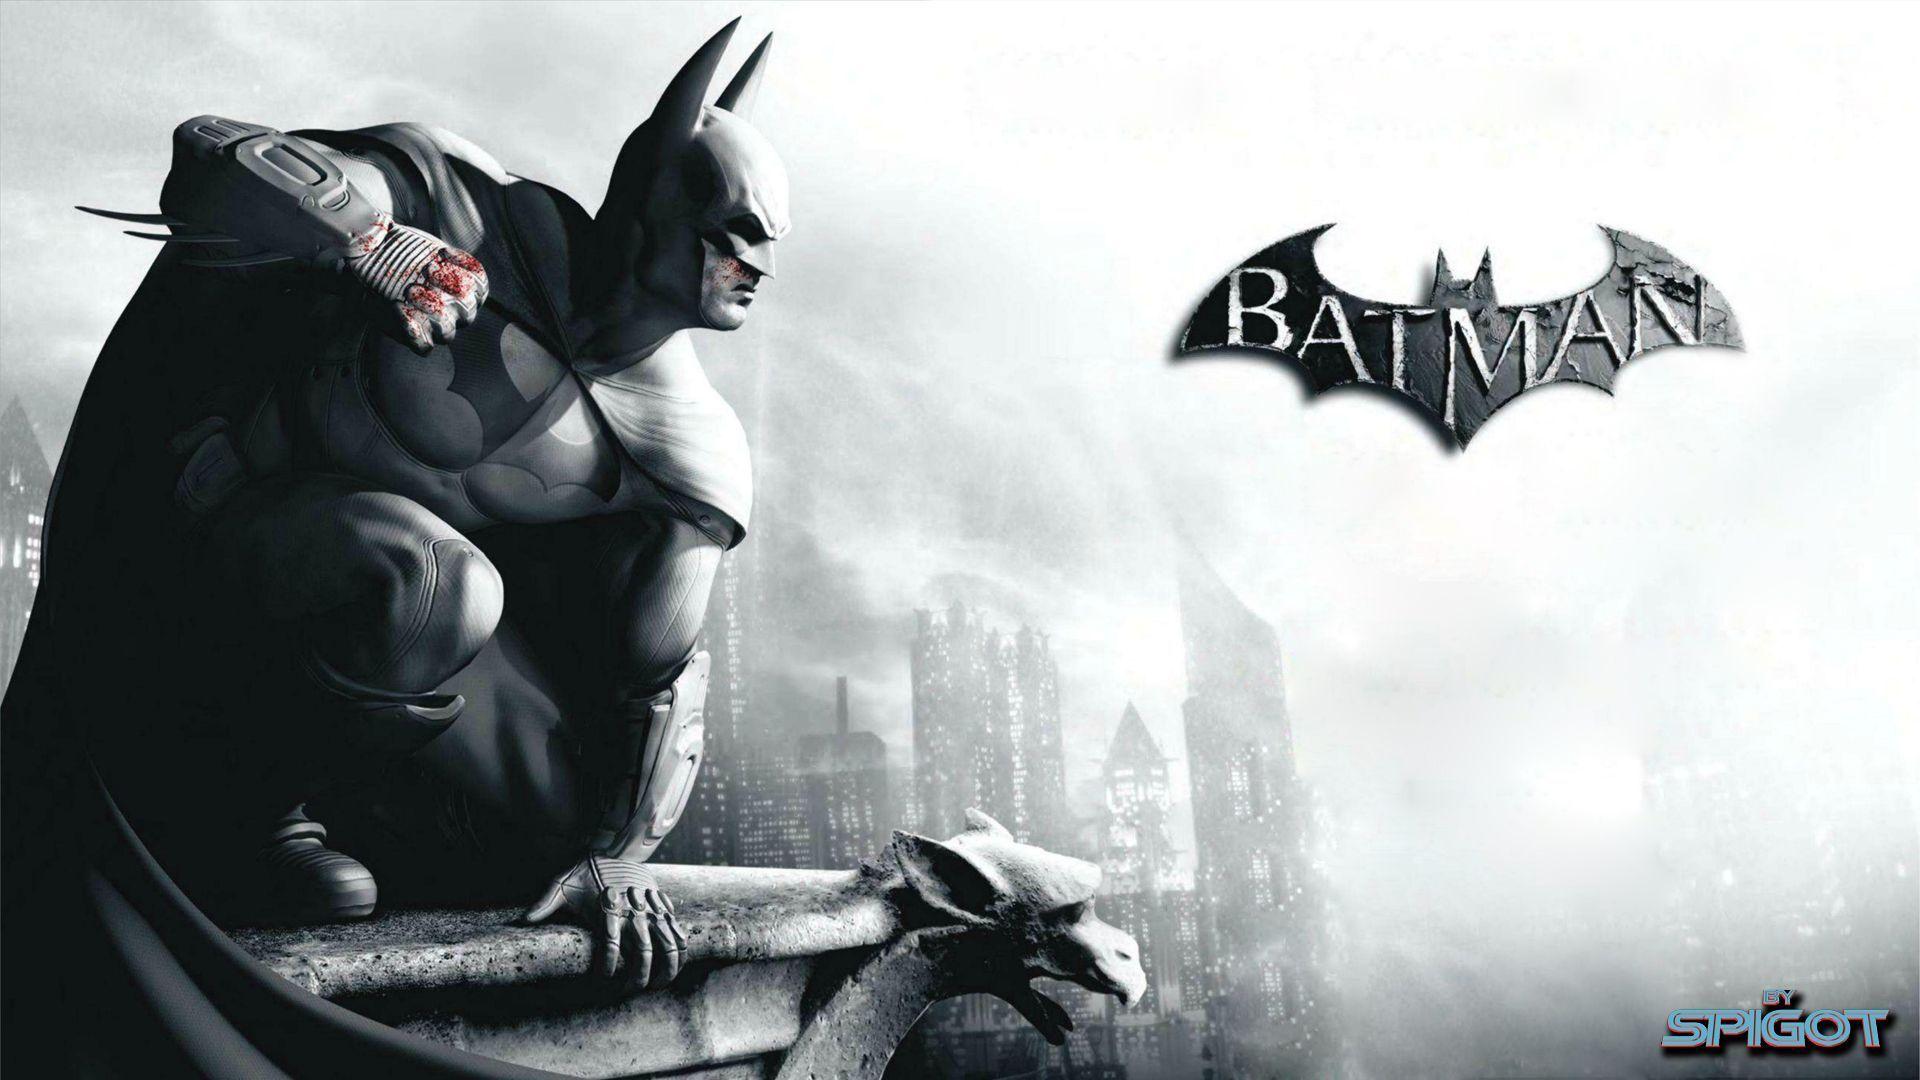 Batman Arkham City Wallpaper HD. Image